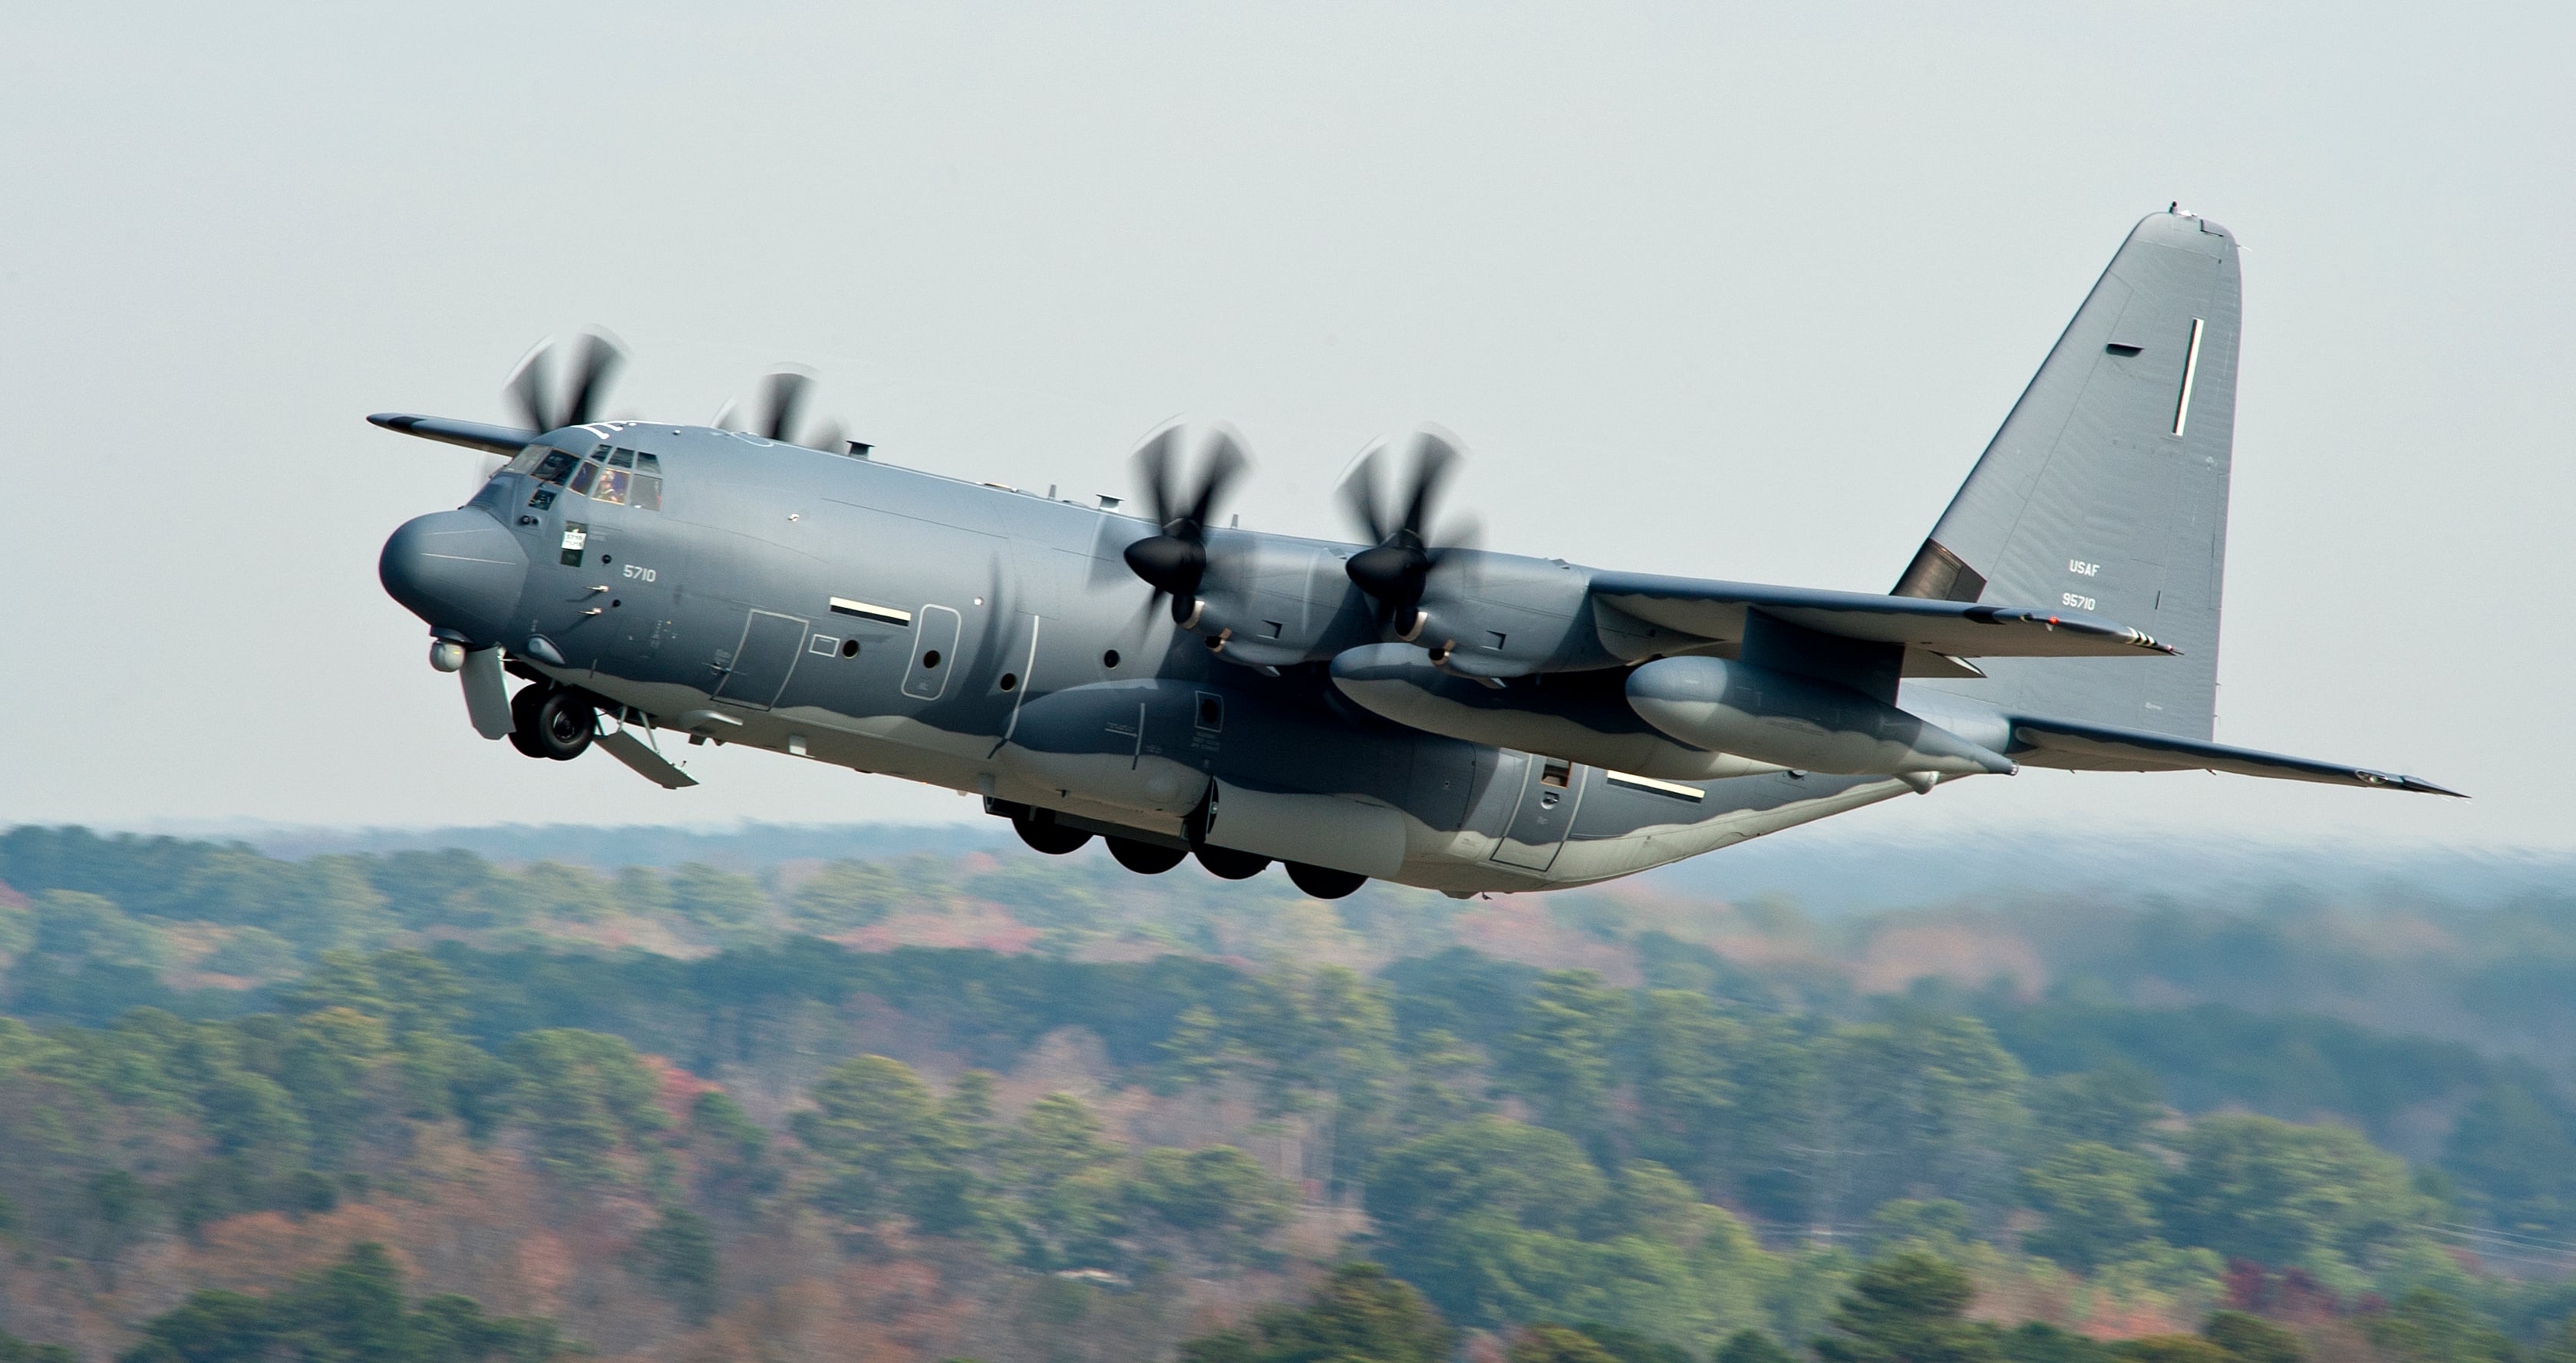 اخبار مترجمة :طائرة هجومية من طراز Ac-130J تهاجم سفينة تابعة للبحرية الأمريكية أثناء مناورات حافة المحيط الهادئ